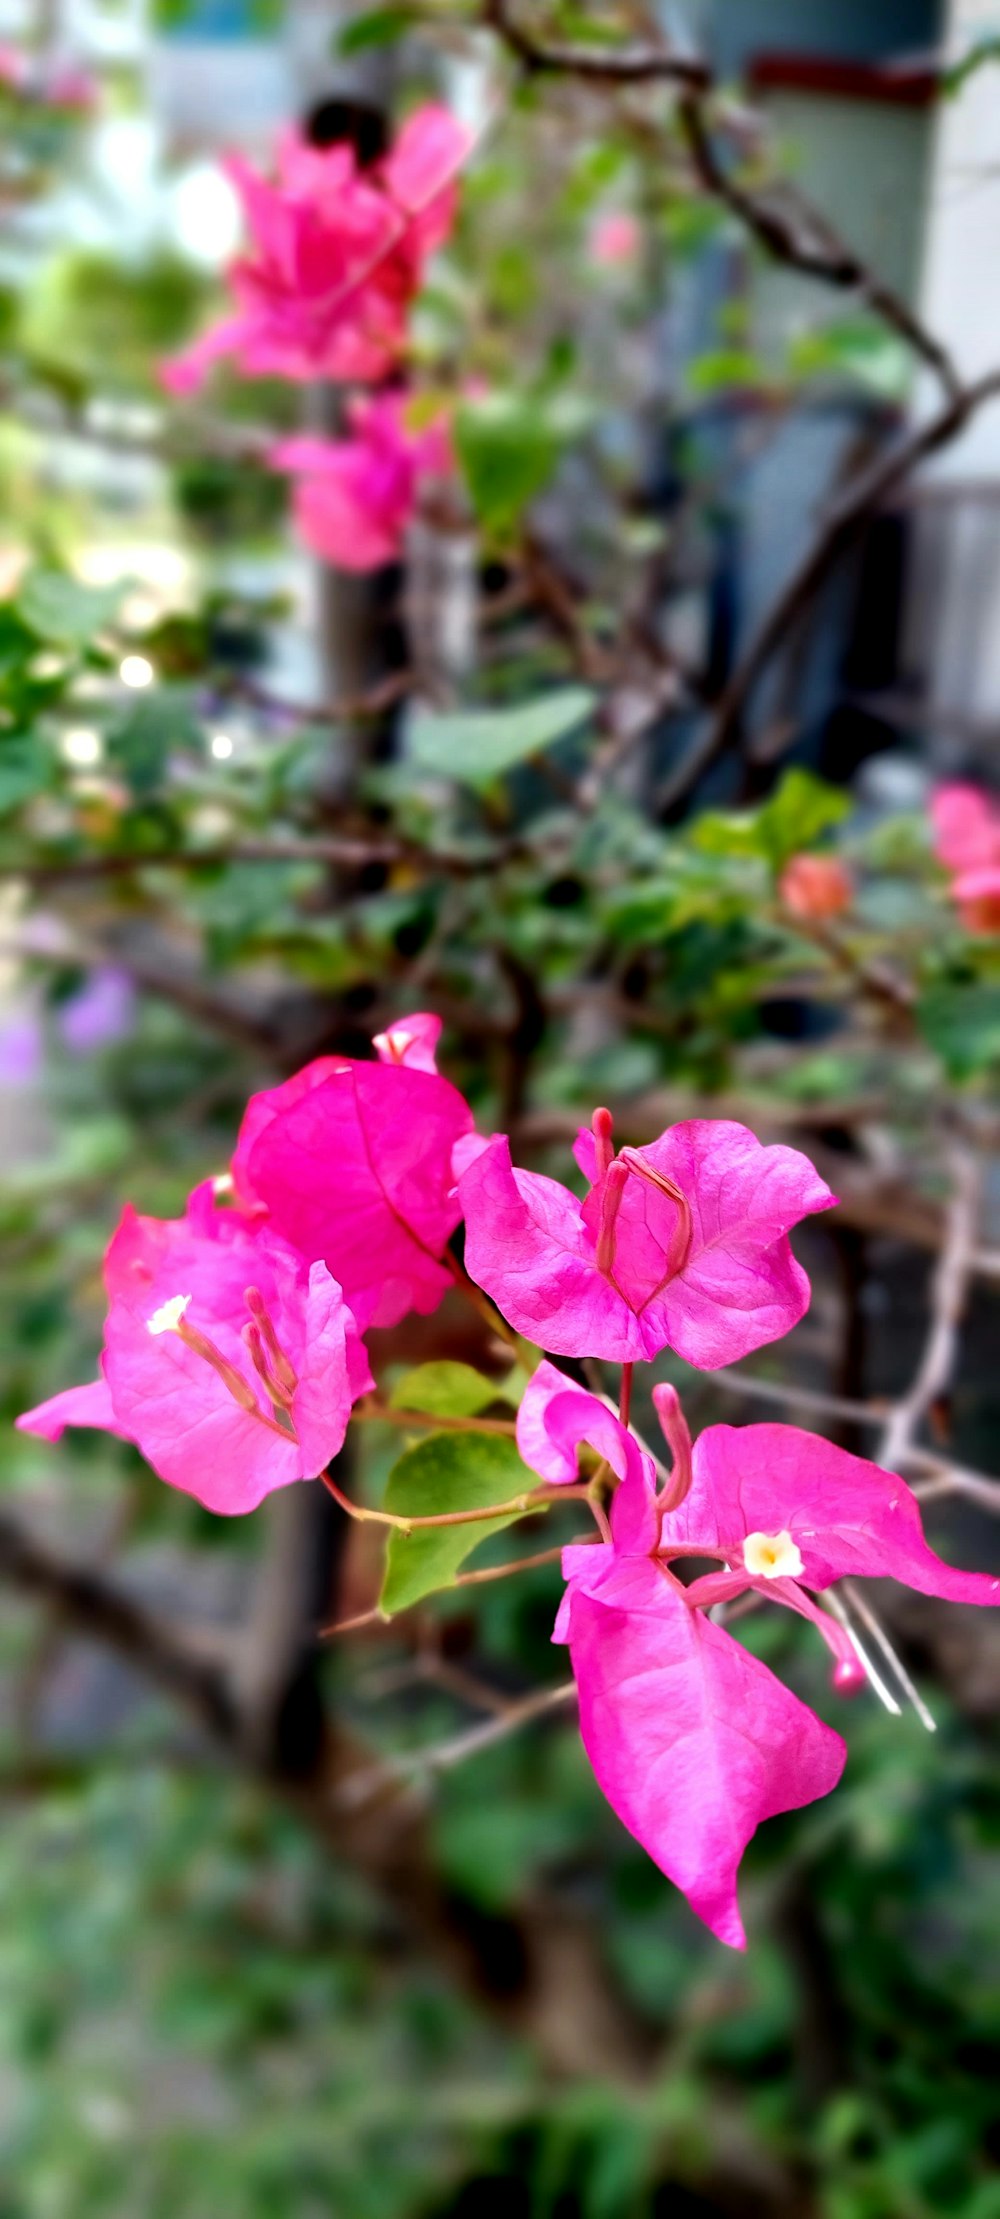 정원에 핑크 꽃이 피고 있다